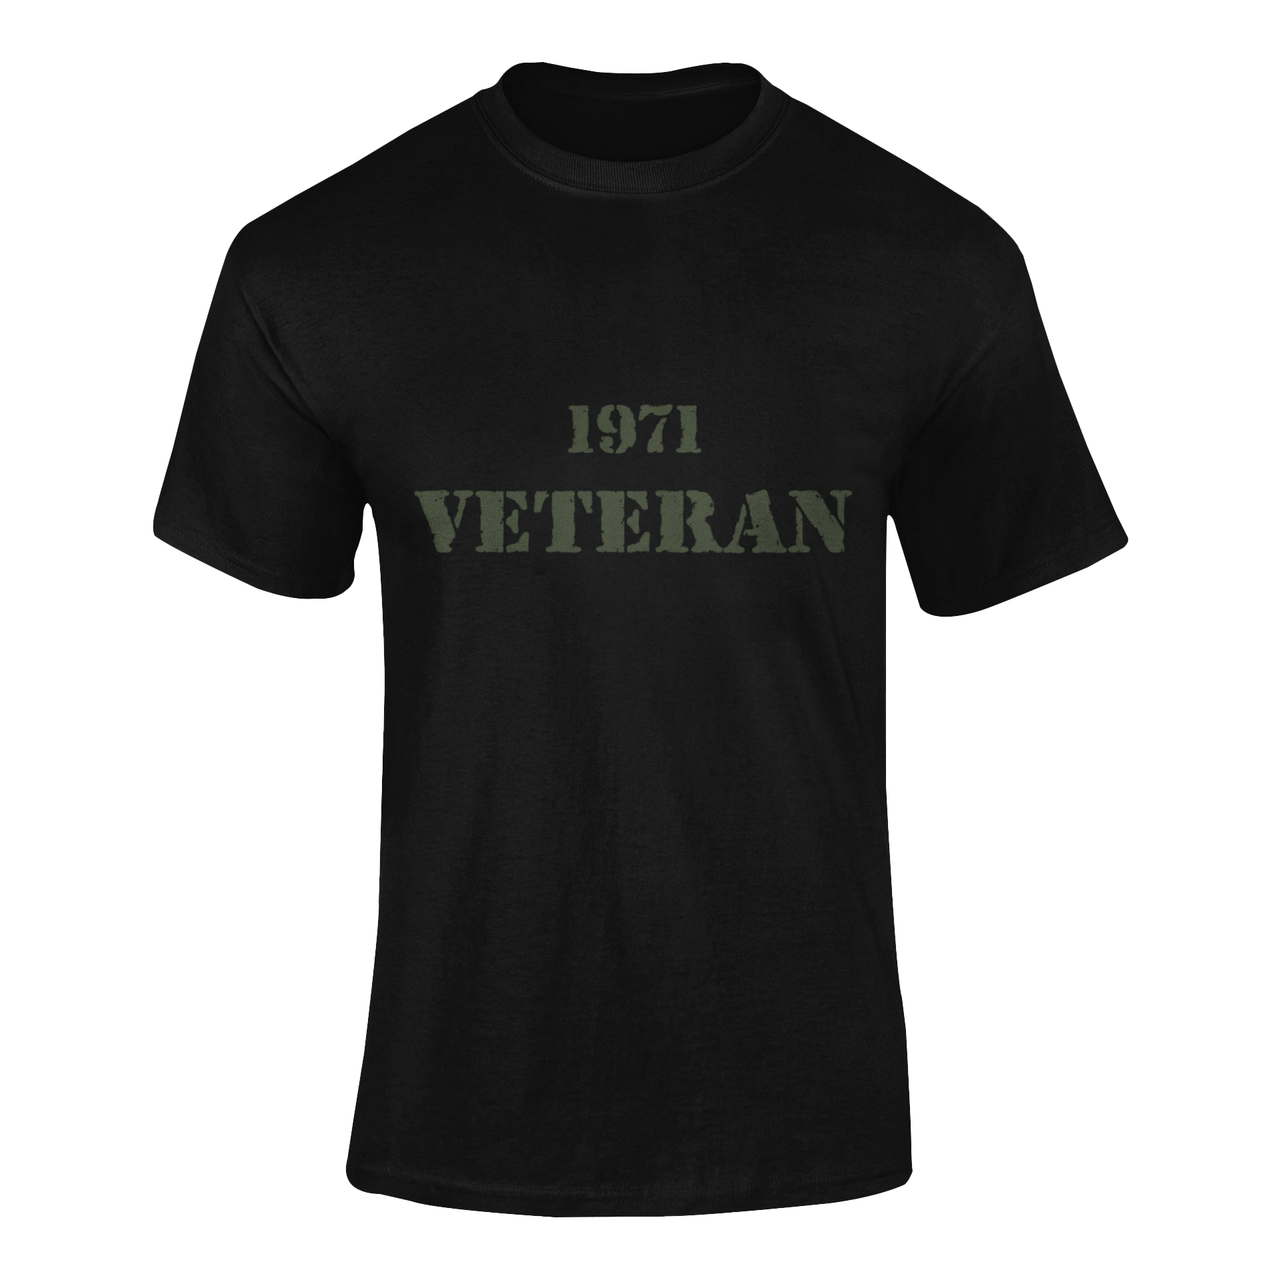 Military T-shirt - 1971 Veteran (Men)